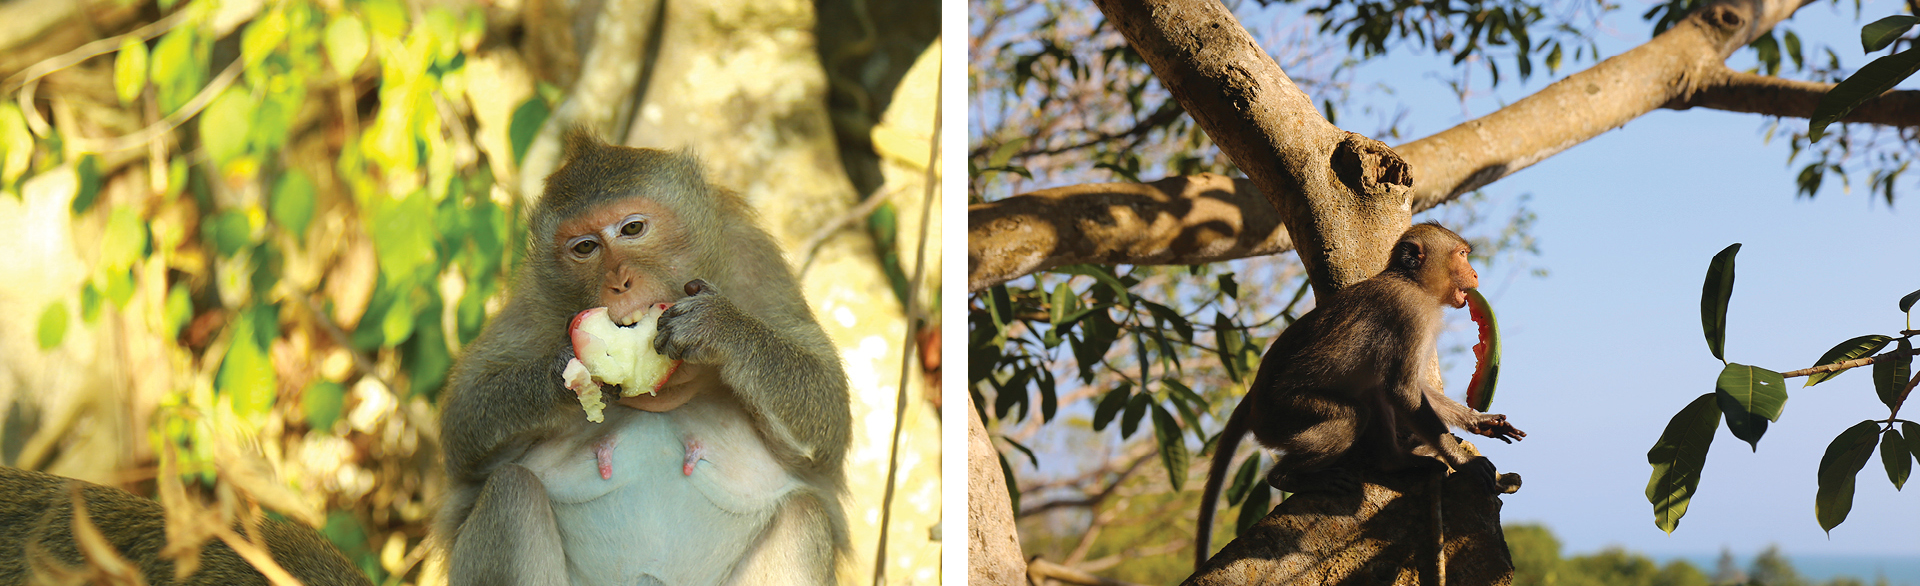 Đàn khỉ sống thân thiện với con người dưới chân núi Kỳ Vân ảnh 11